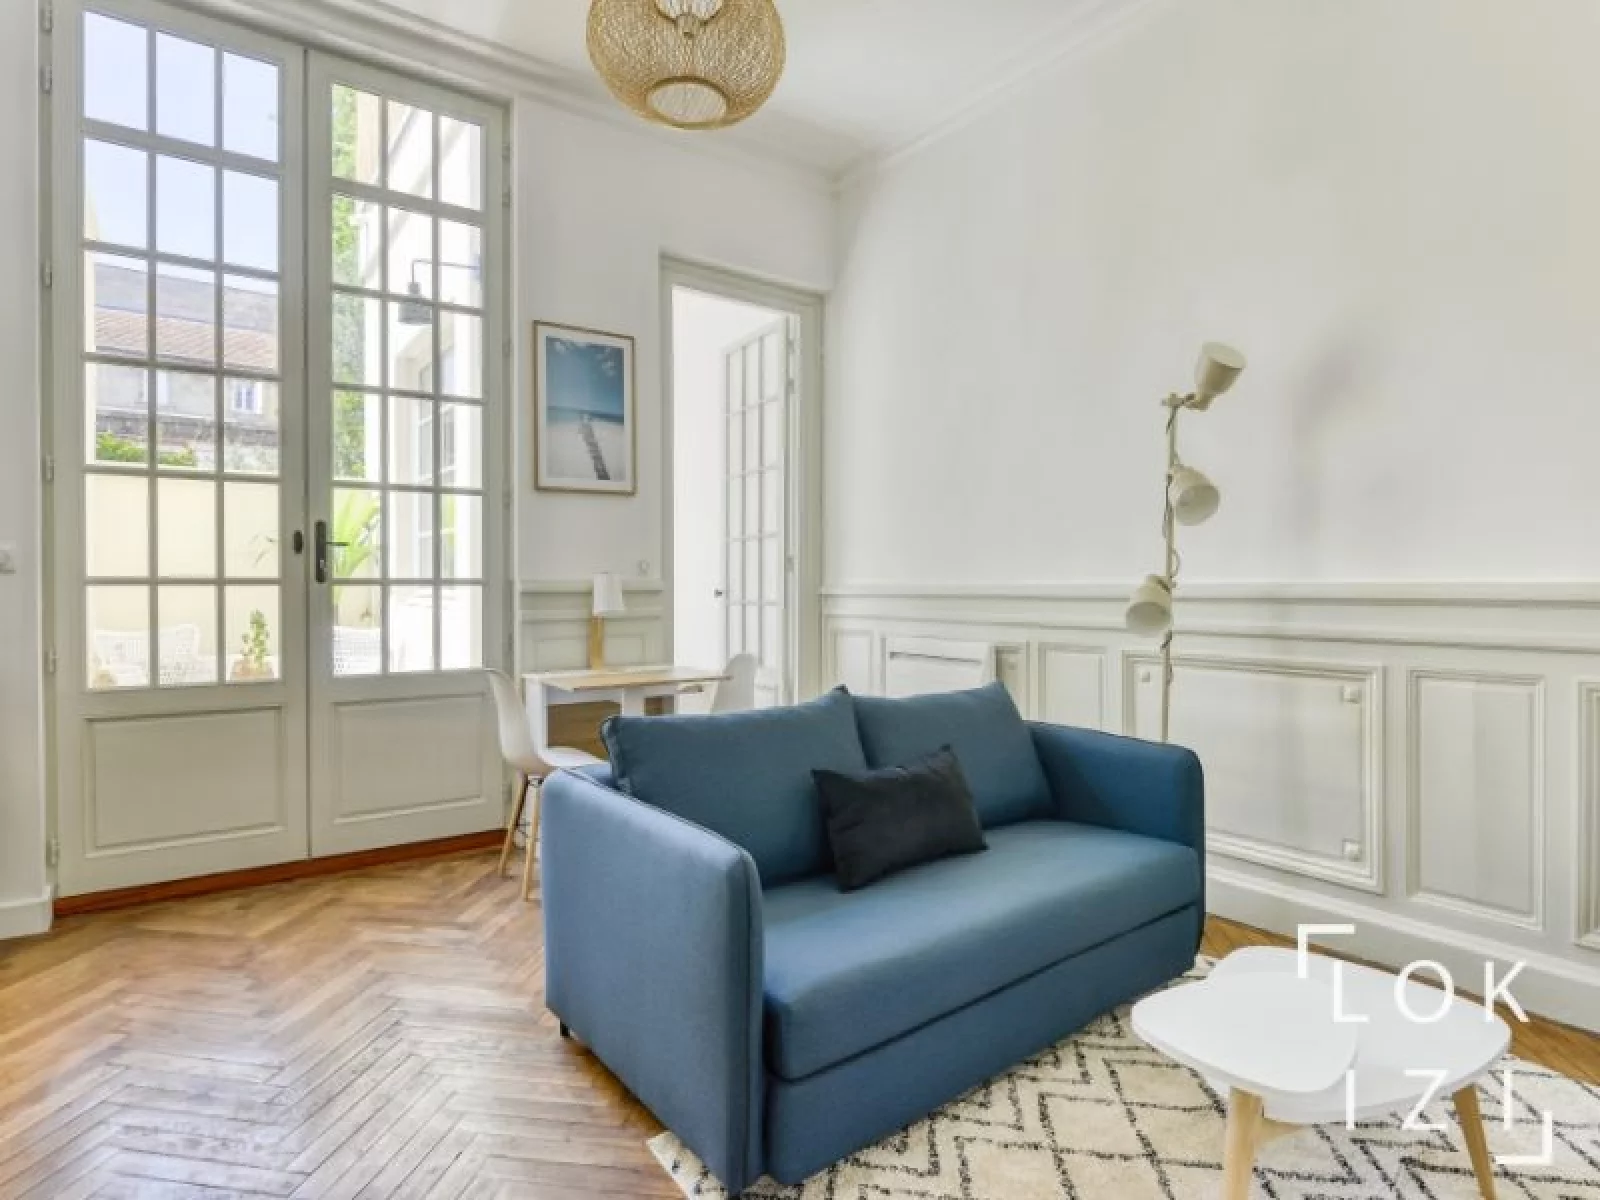 Location appartement meublé 2 pièces 33m² (Bordeaux - Chartrons)